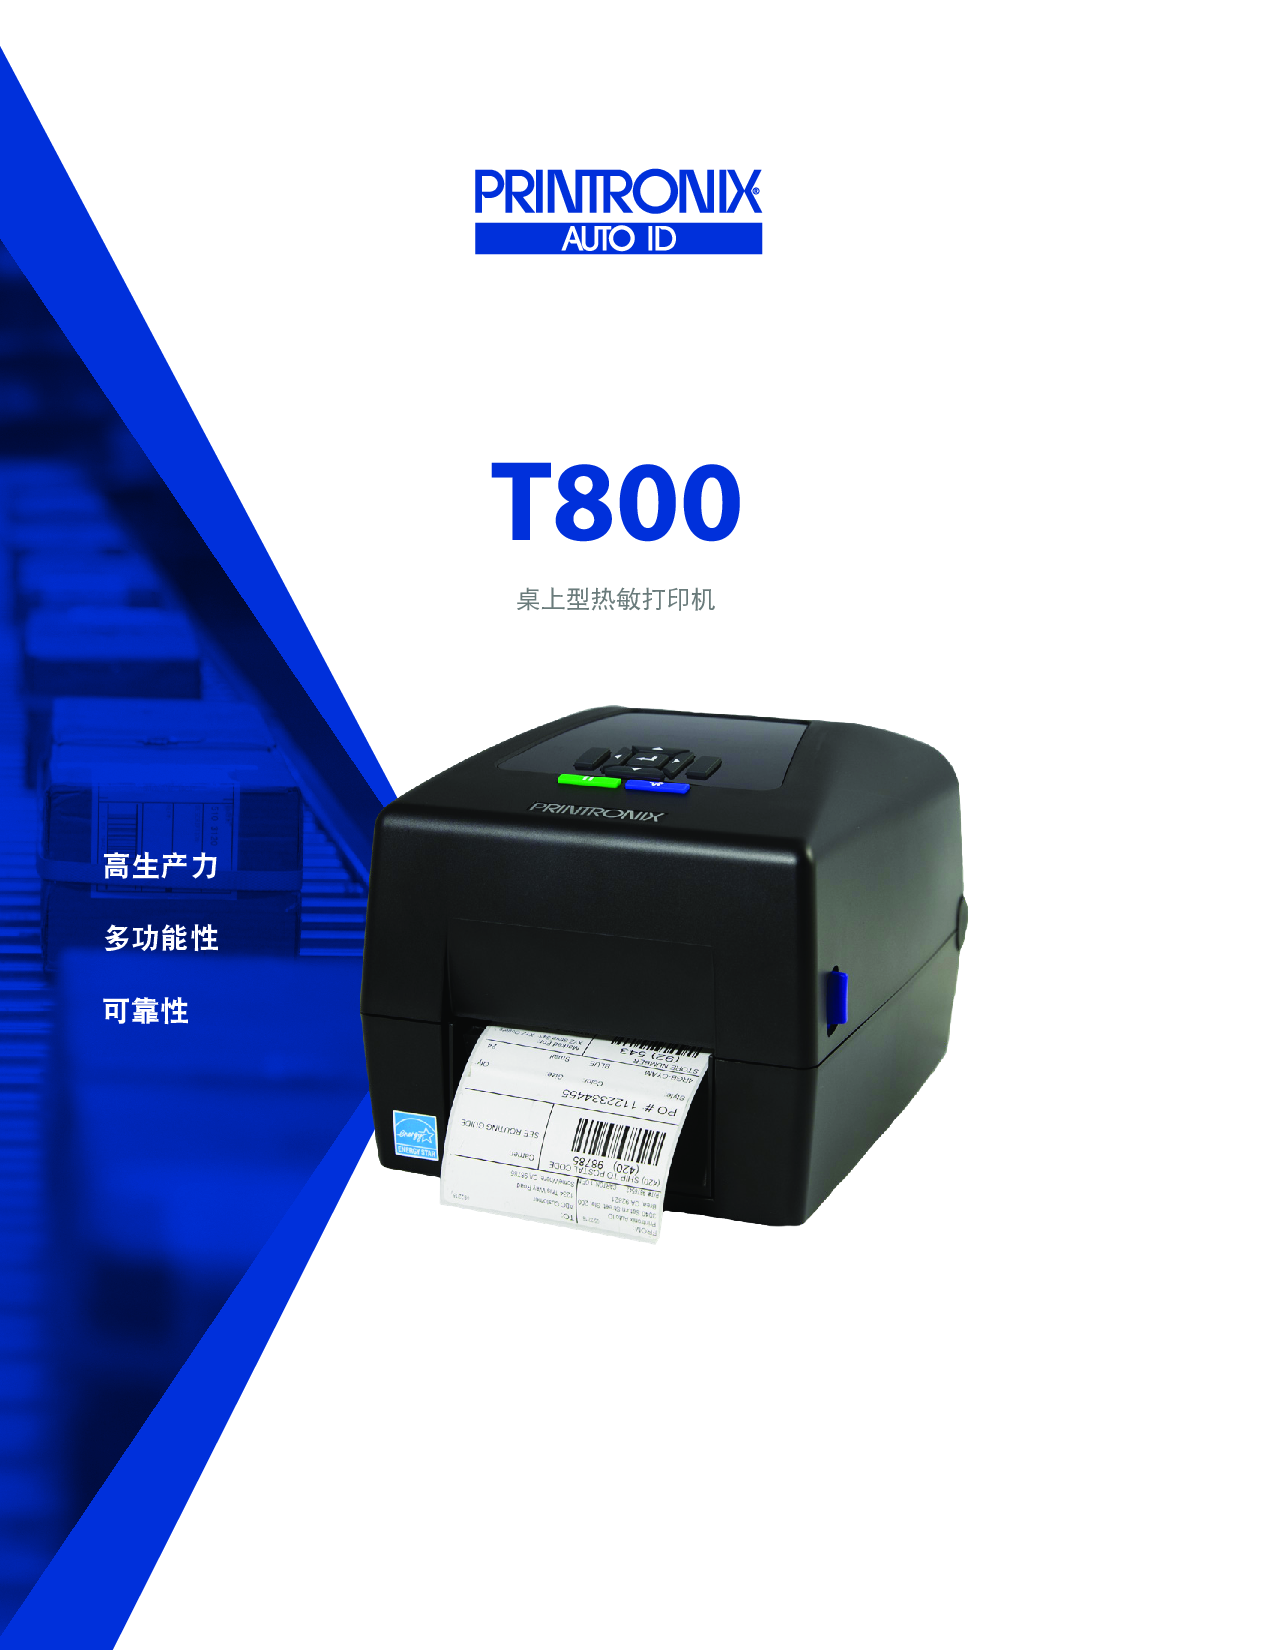 普印力 T800 系列 桌面型 RFID打印机图片